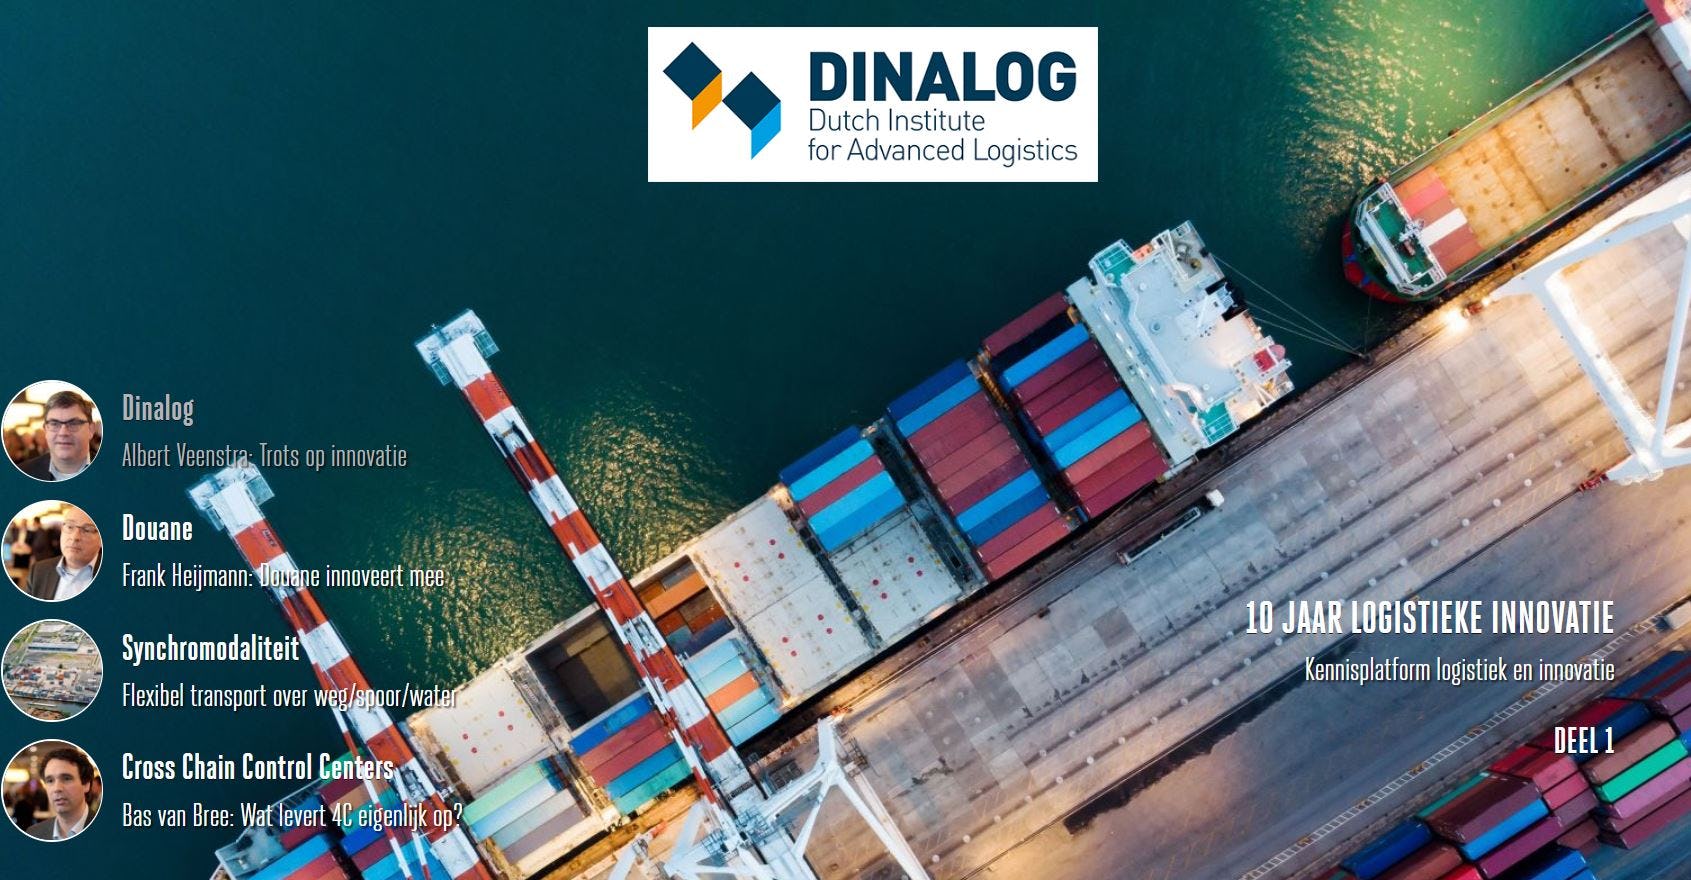 Dinalog 10 jaar logistieke innovatie: dit is er bereikt